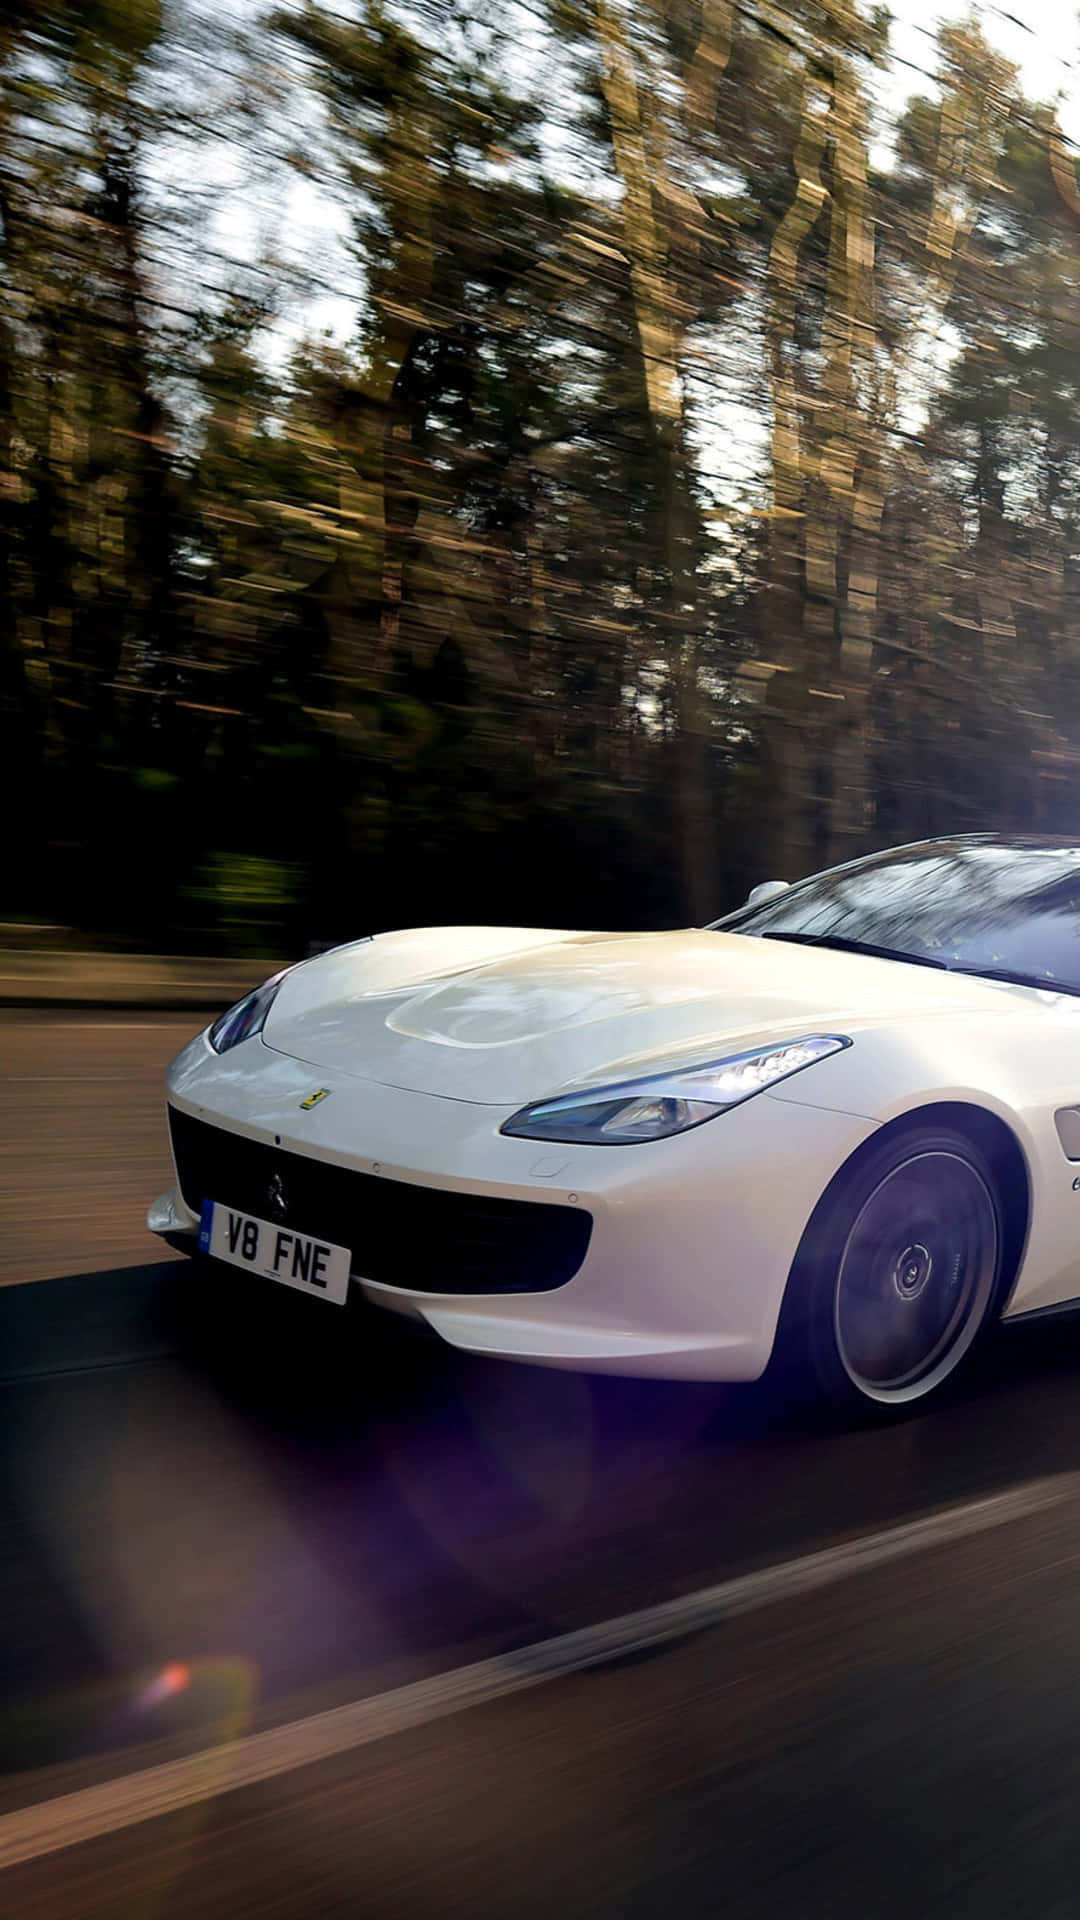 Tilføj lidt luksus til dit liv med en hvid Ferrari iPhone. Wallpaper